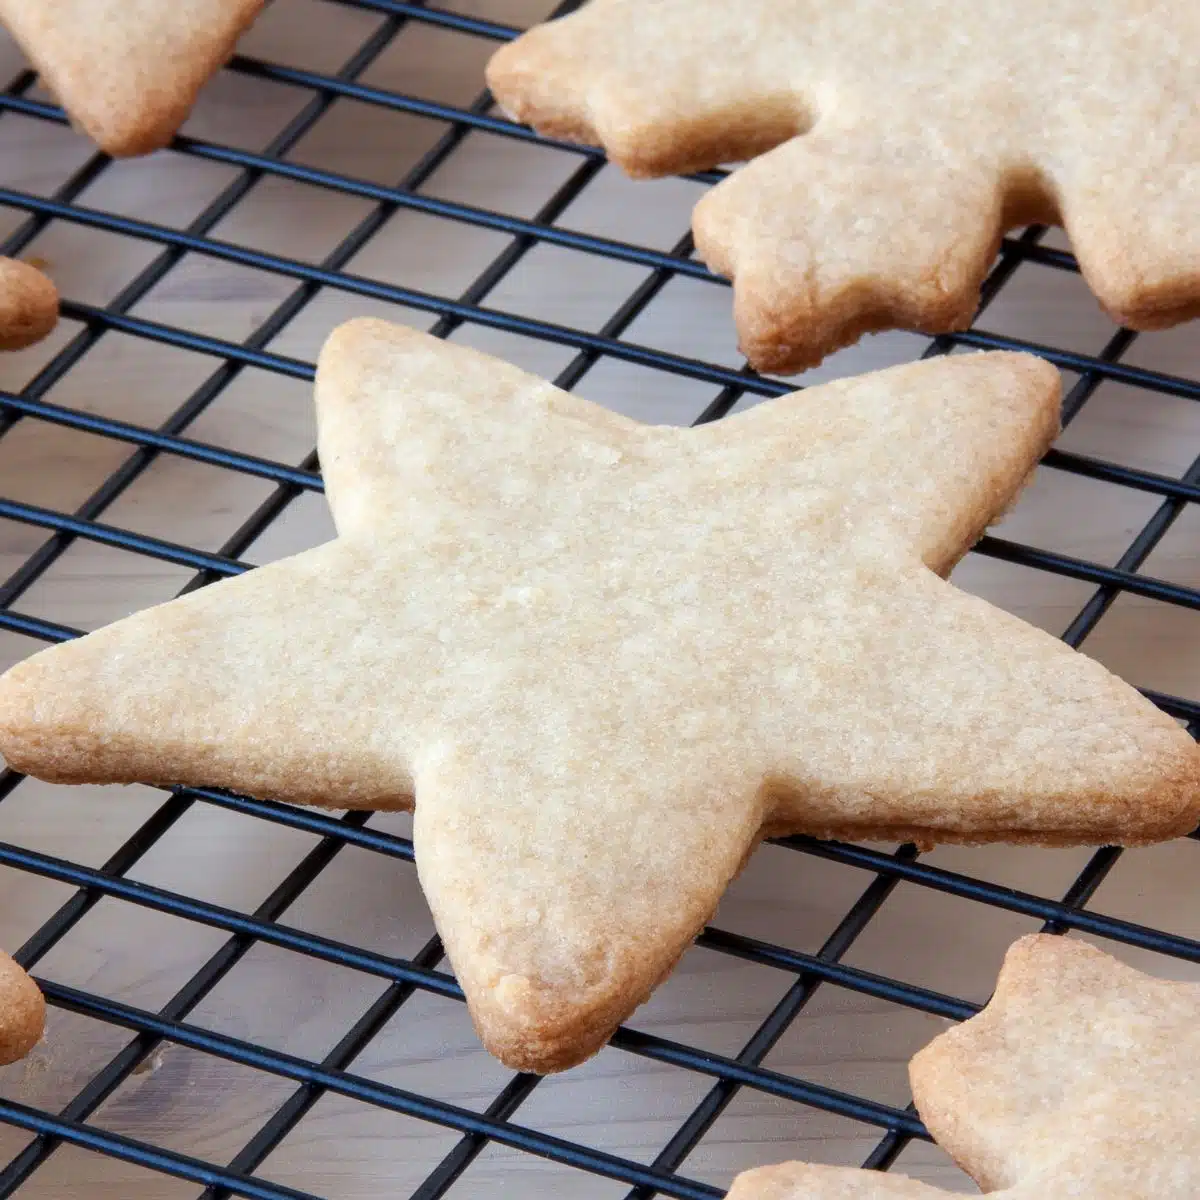 Квадратное изображение запеченного сахарного печенья в форме звезды на охлаждающей стойке.